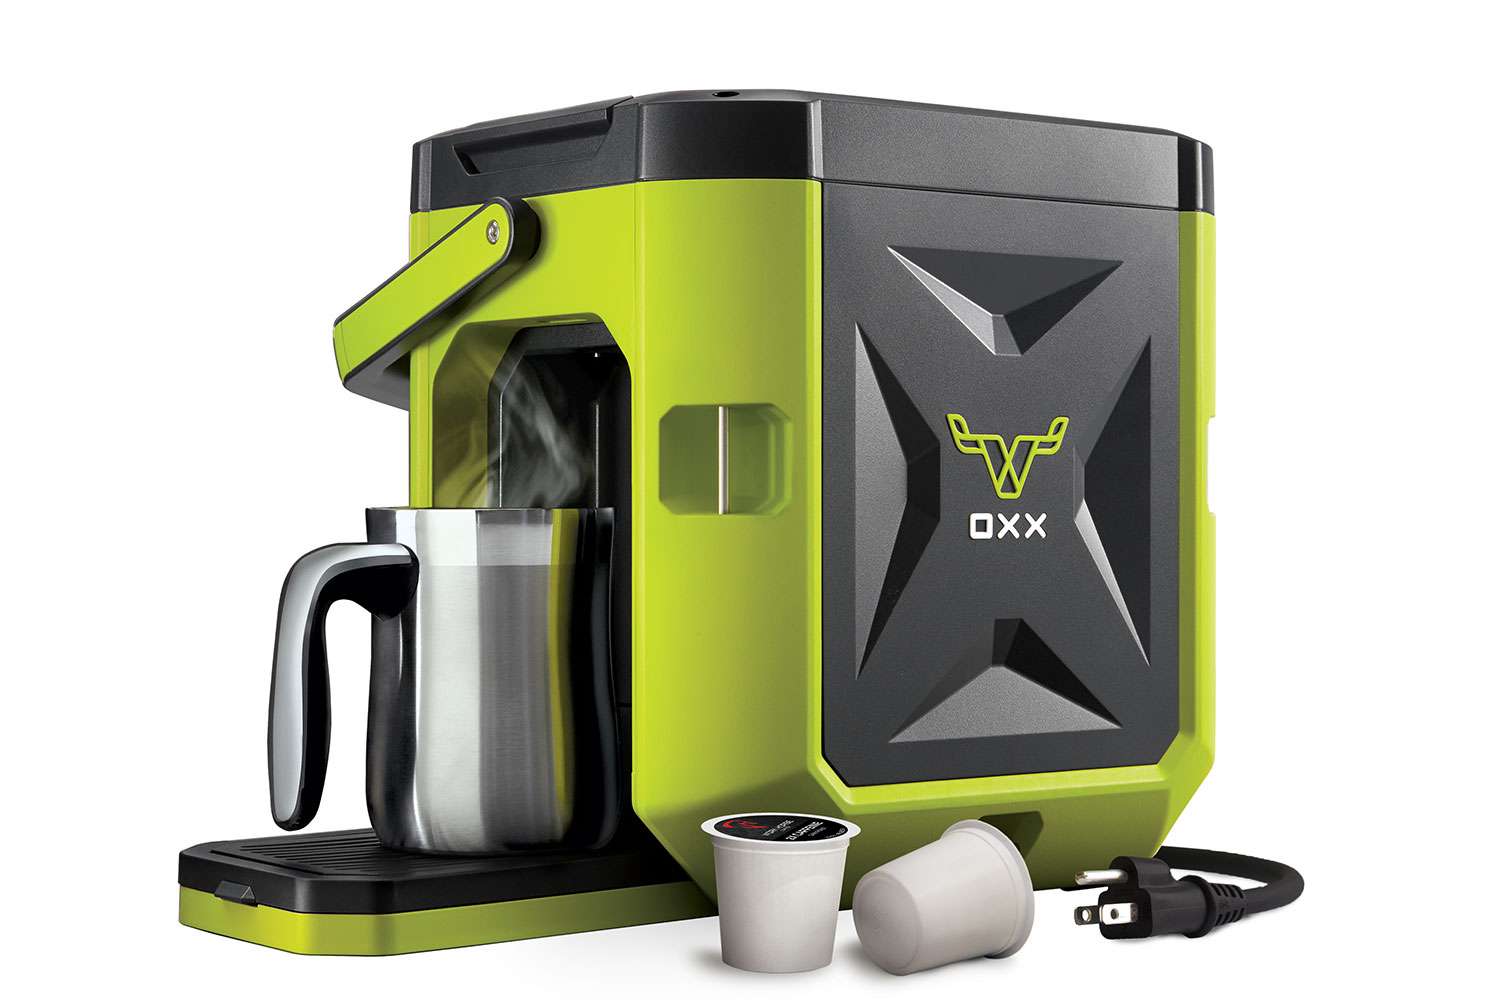 Oxx CoffeeBoxx, $199.99